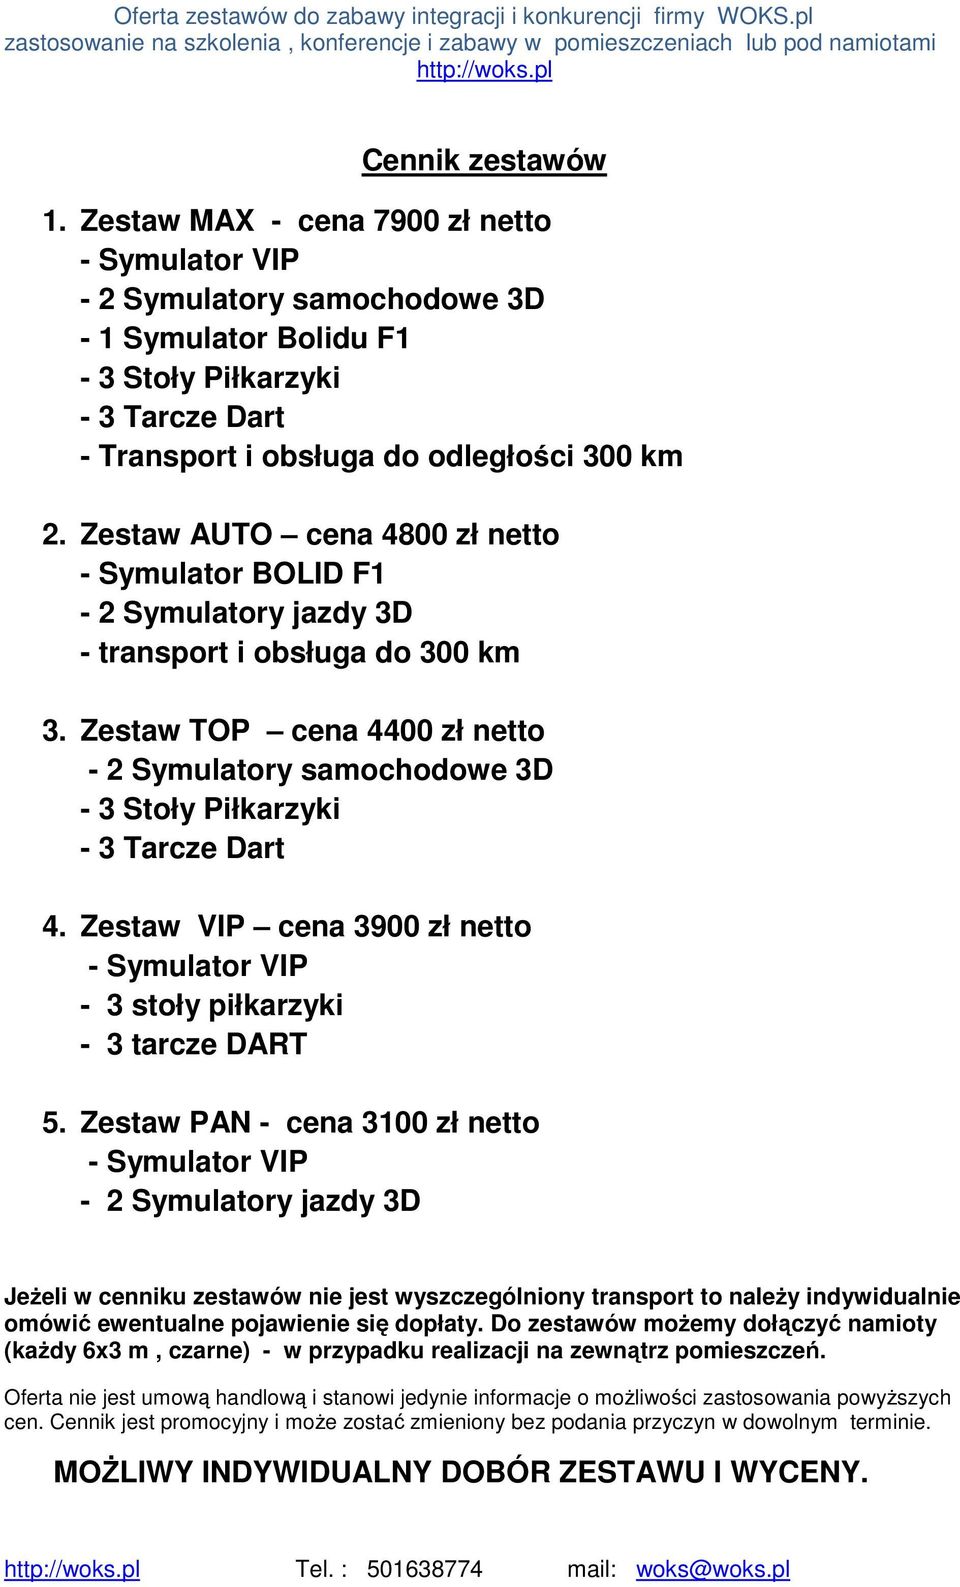 Zestaw TOP cena 4400 zł netto - 2 Symulatory samochodowe 3D - 3 Stoły Piłkarzyki - 3 Tarcze Dart 4. Zestaw VIP cena 3900 zł netto - 3 stoły piłkarzyki - 3 tarcze DART 5.